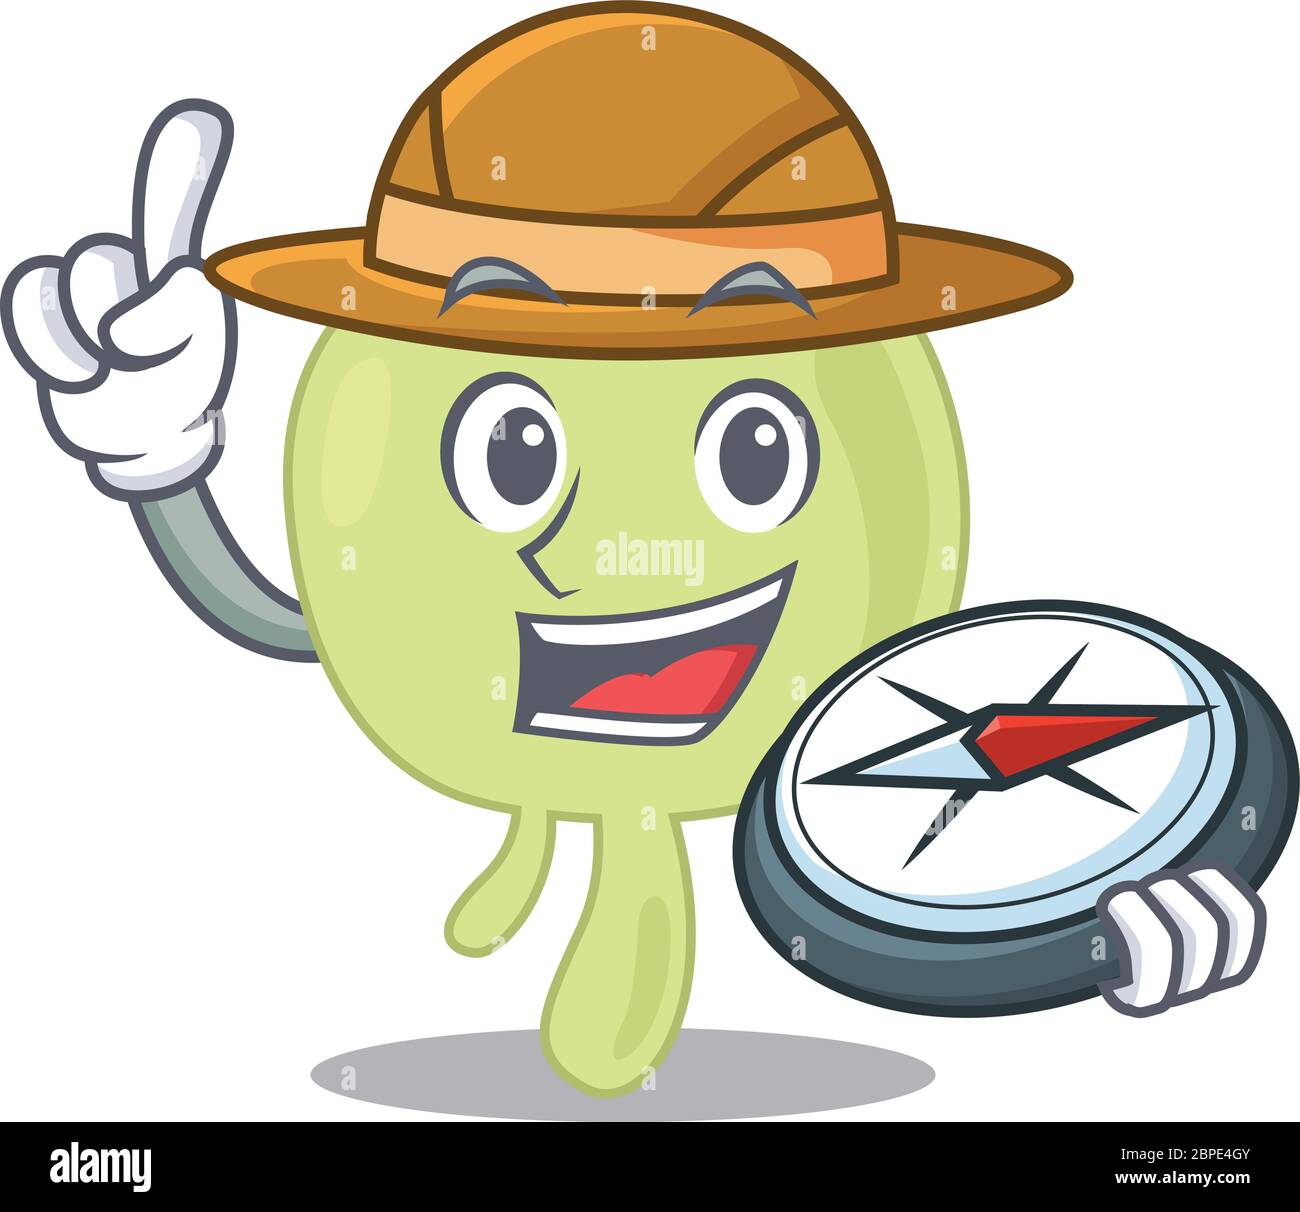 mascot diseño concepto de explorador de ganglios linfáticos utilizando una brújula en el bosque Ilustración del Vector